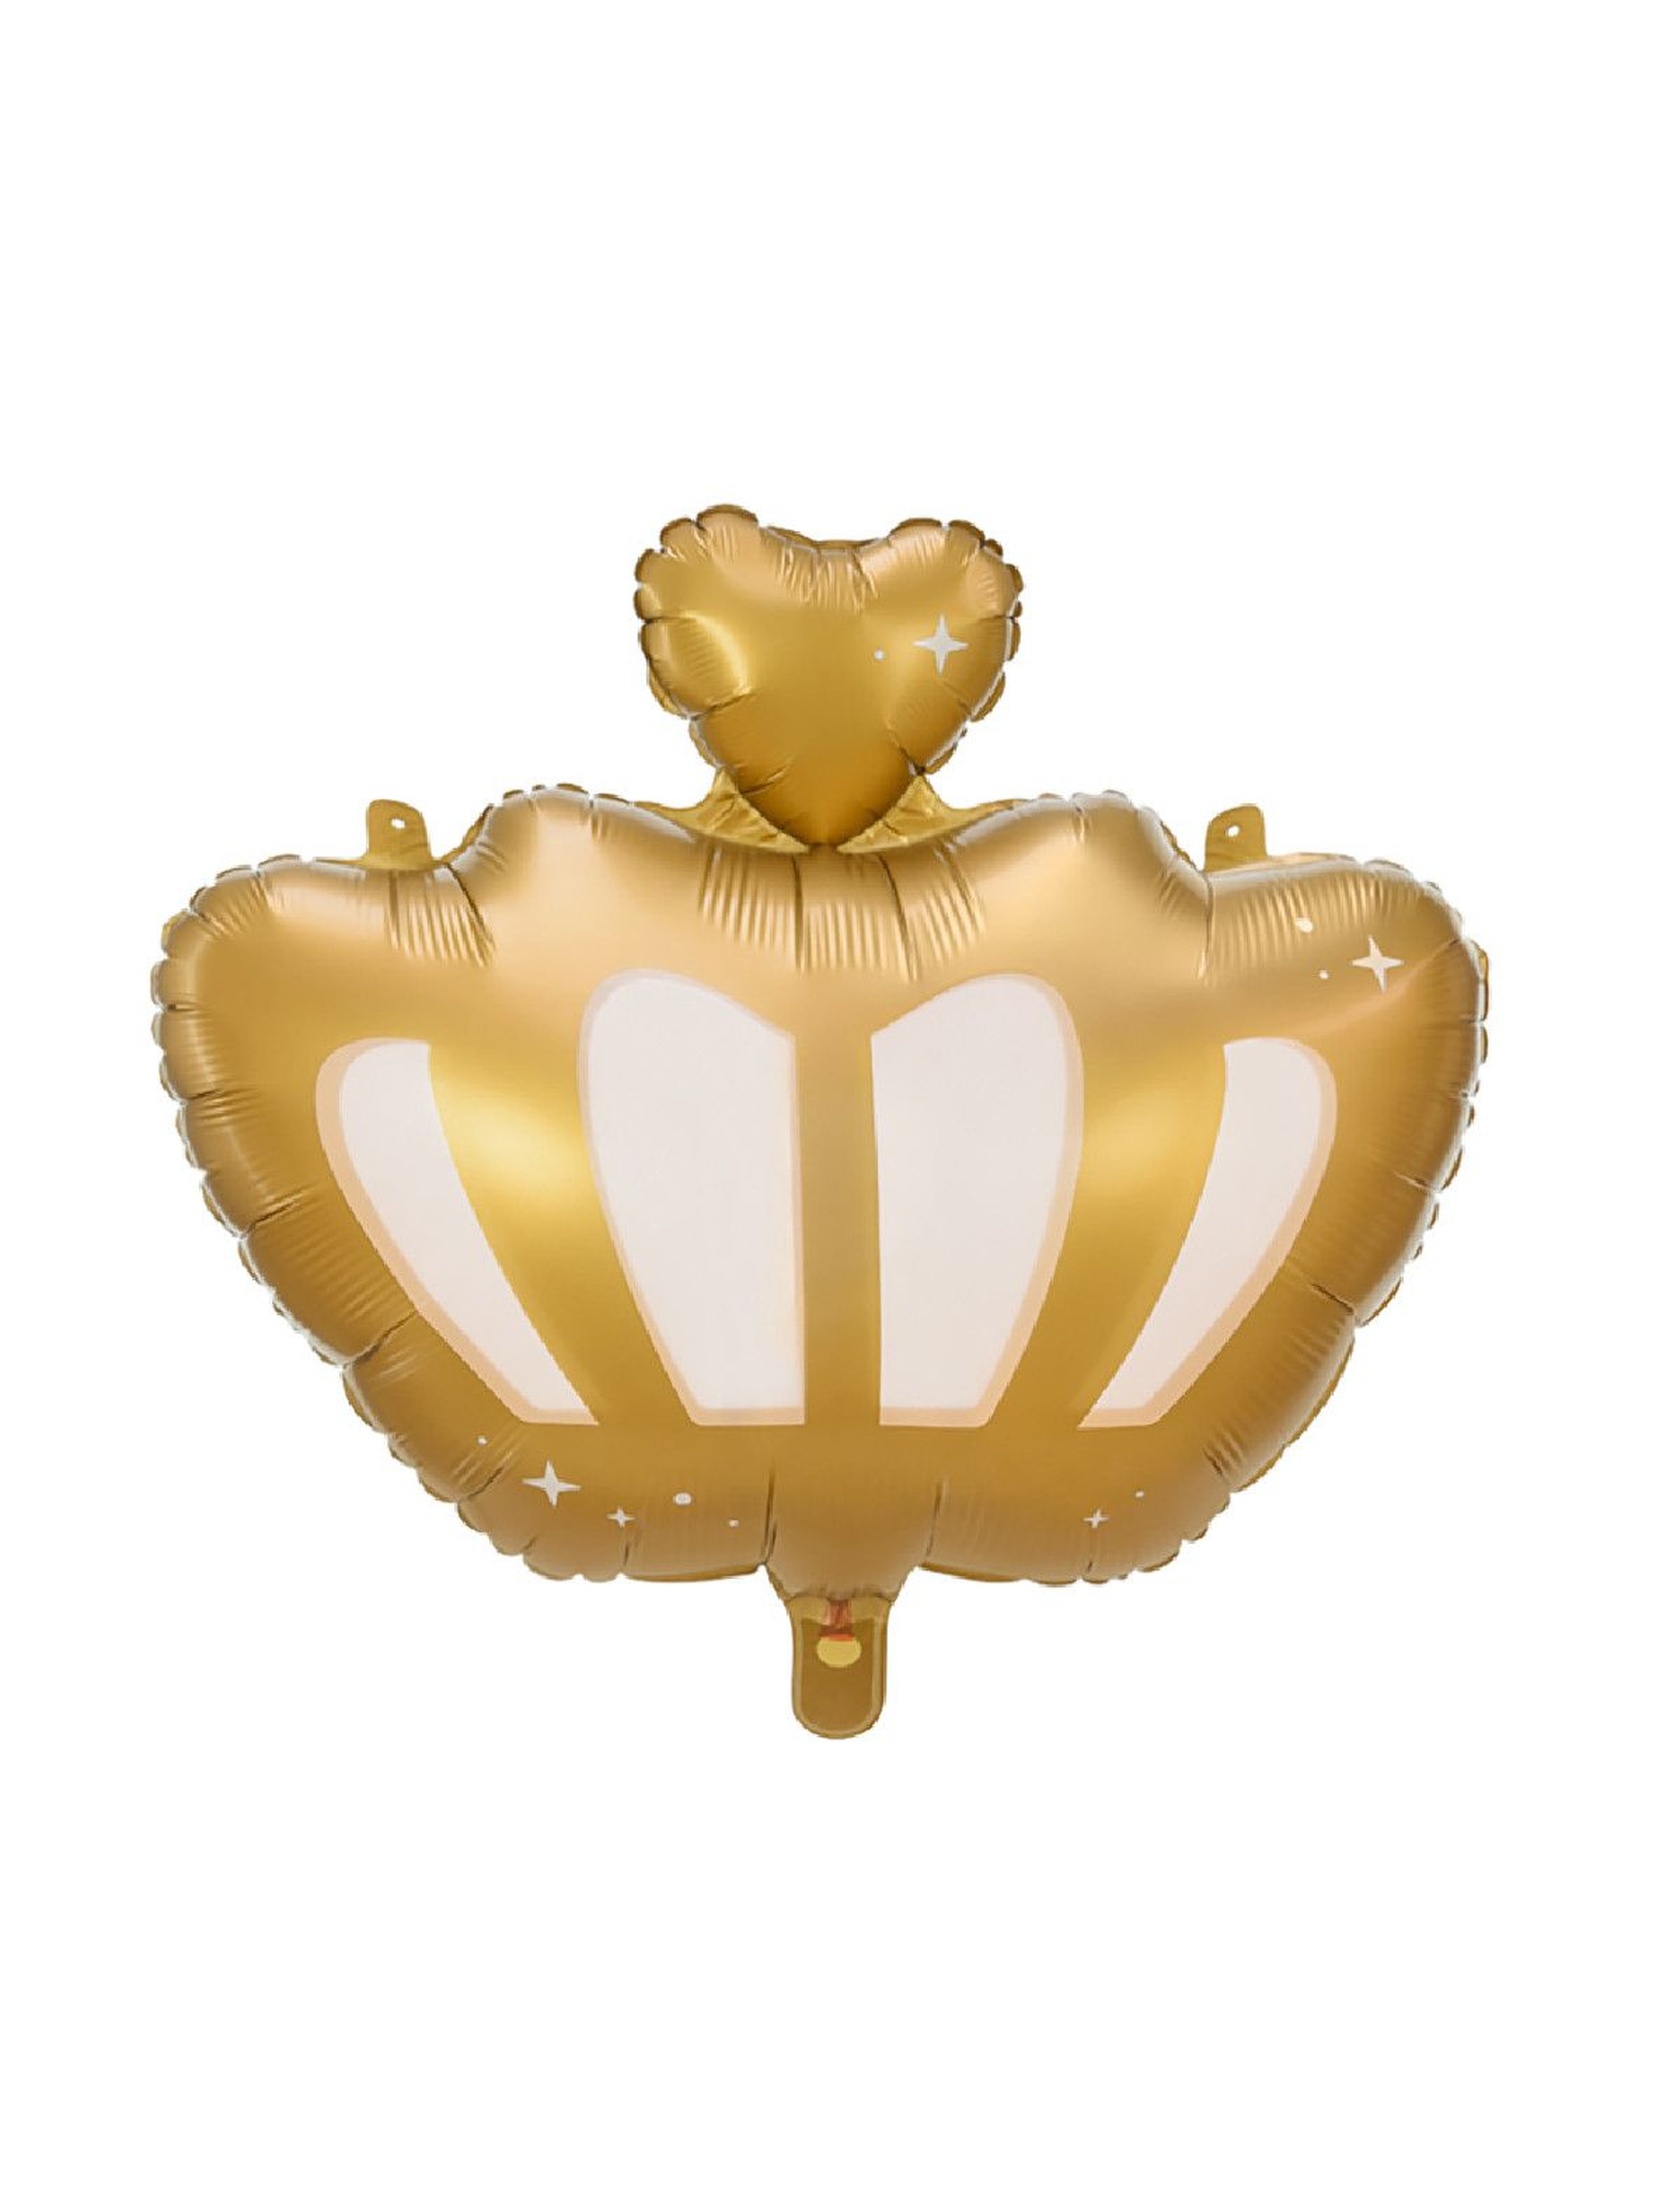 Balon foliowy Korona z białym i metalizowanym złotym nadrukiem